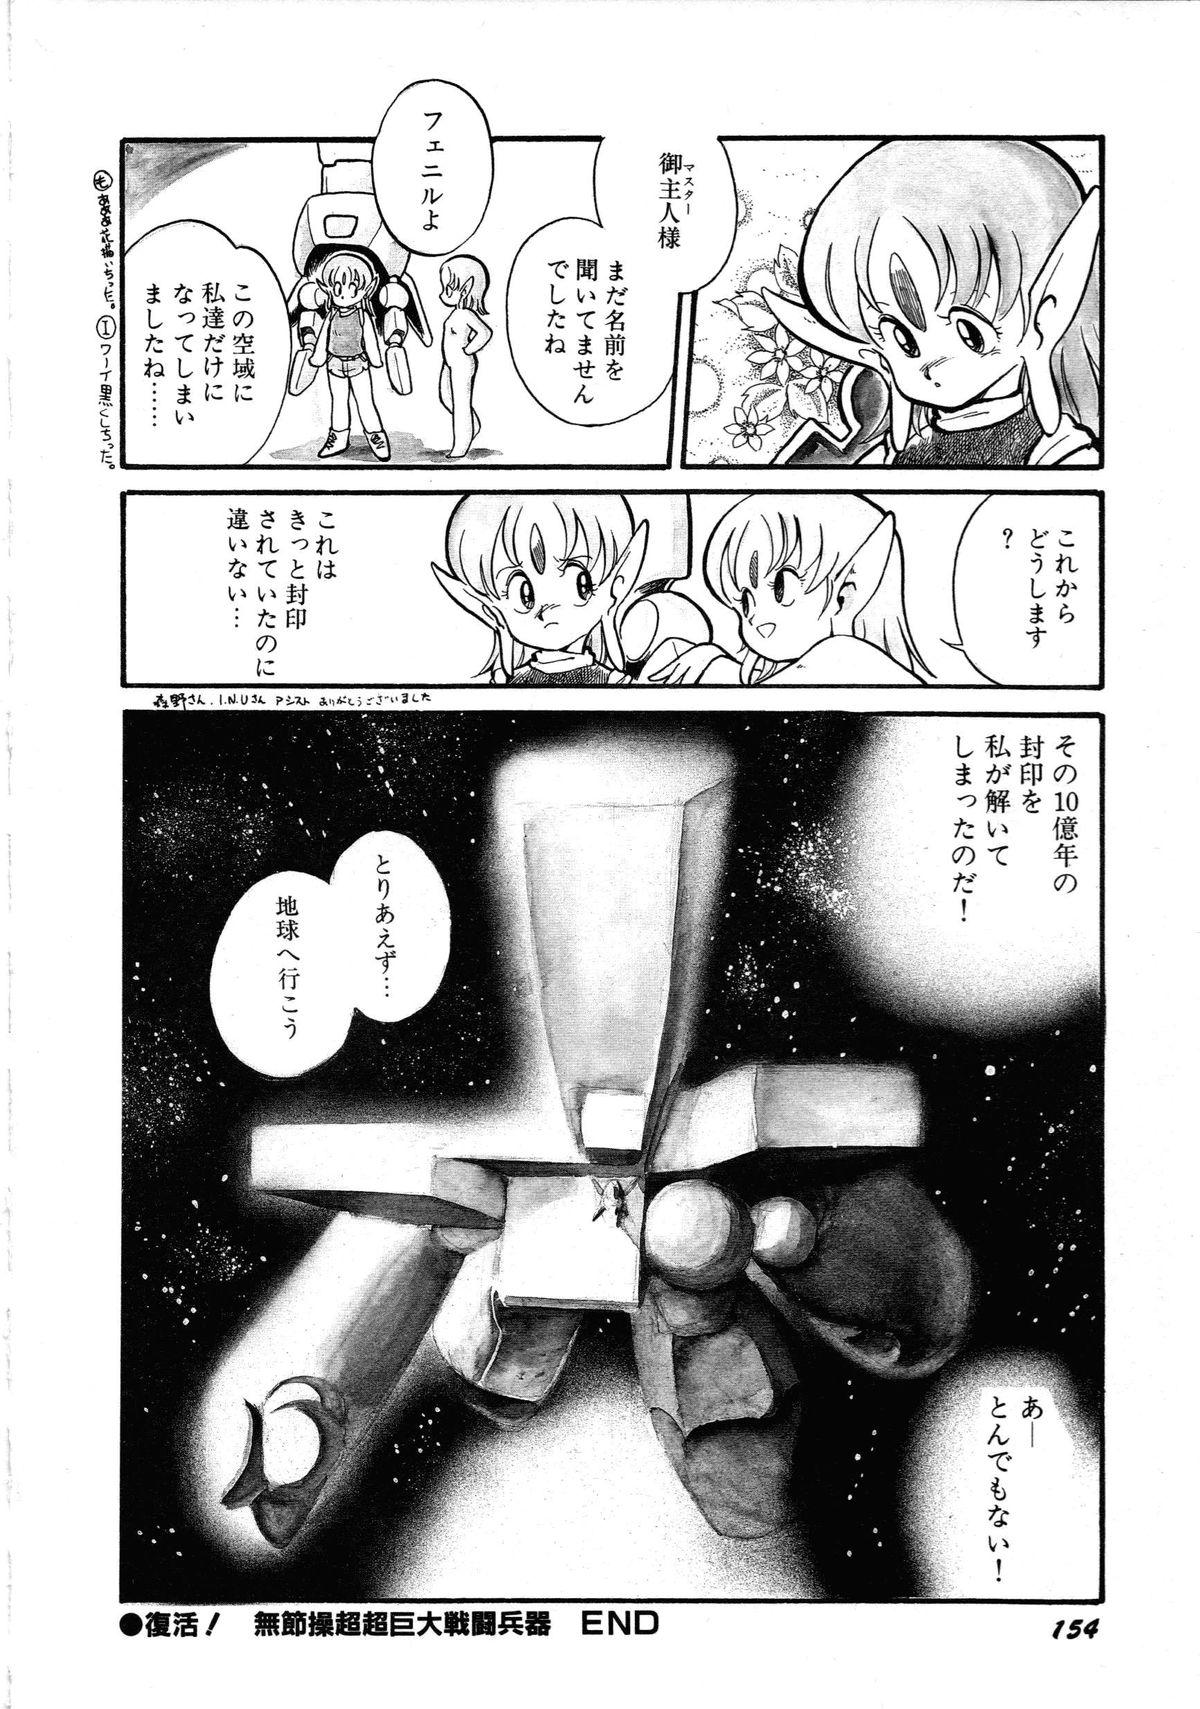 [Anthology] Robot & Bishoujo Kessakusen - Lemon People 1982-1986 157